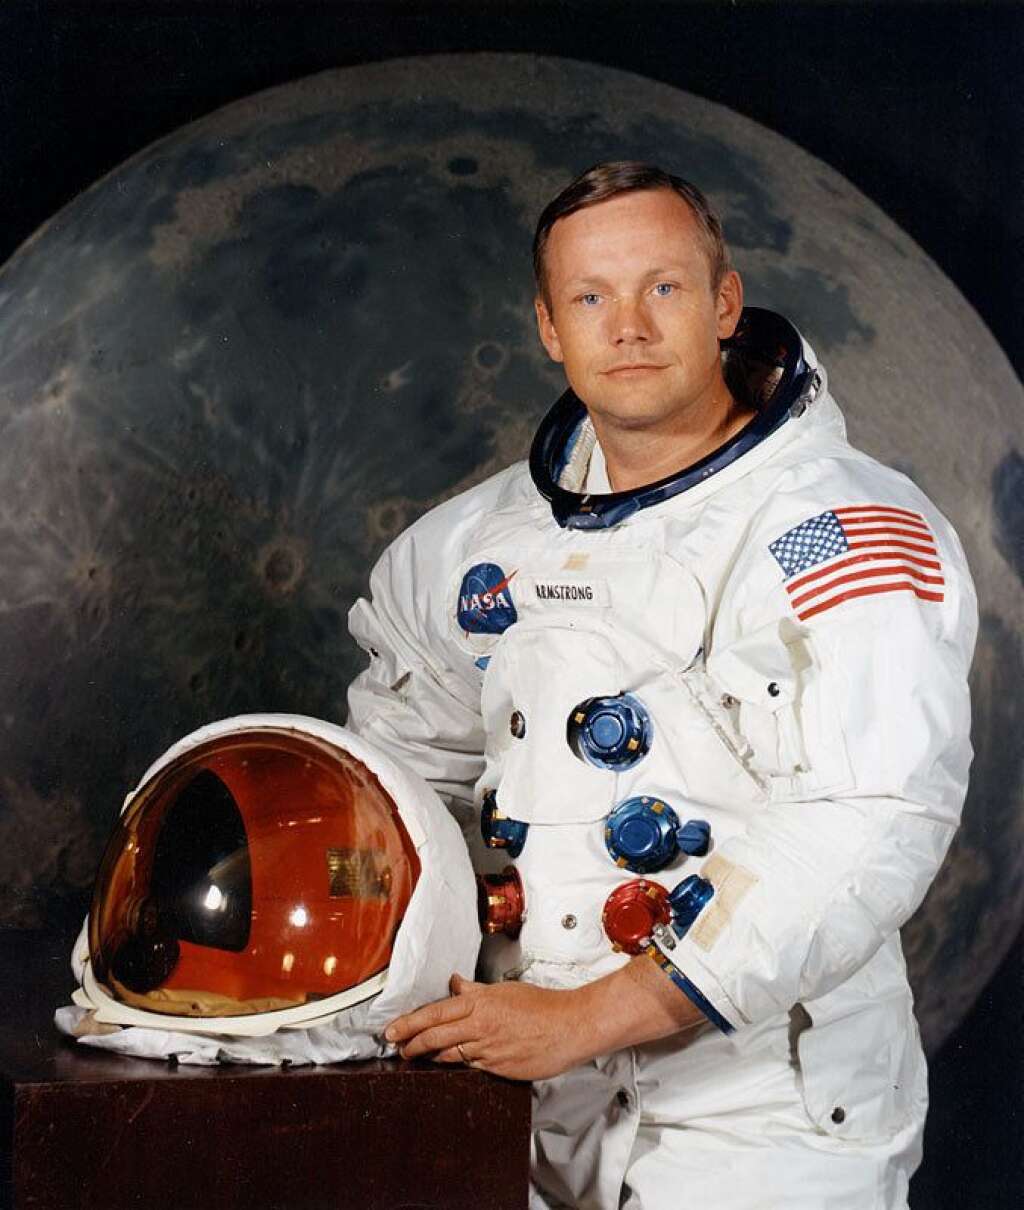 Neil Armstrong - Le premier homme à avoir marché sur la lune n'est plus. L'astronaute américain Neil Armstrong a quitté une nouvelle fois la Terre à l'âge de 82 ans. Il restera <a href="http://www.huffingtonpost.fr/2012/08/25/neil-armstrong-est-mort-a_n_1830365.html">un des "plus grands héros"</a> pour Barack Obama.